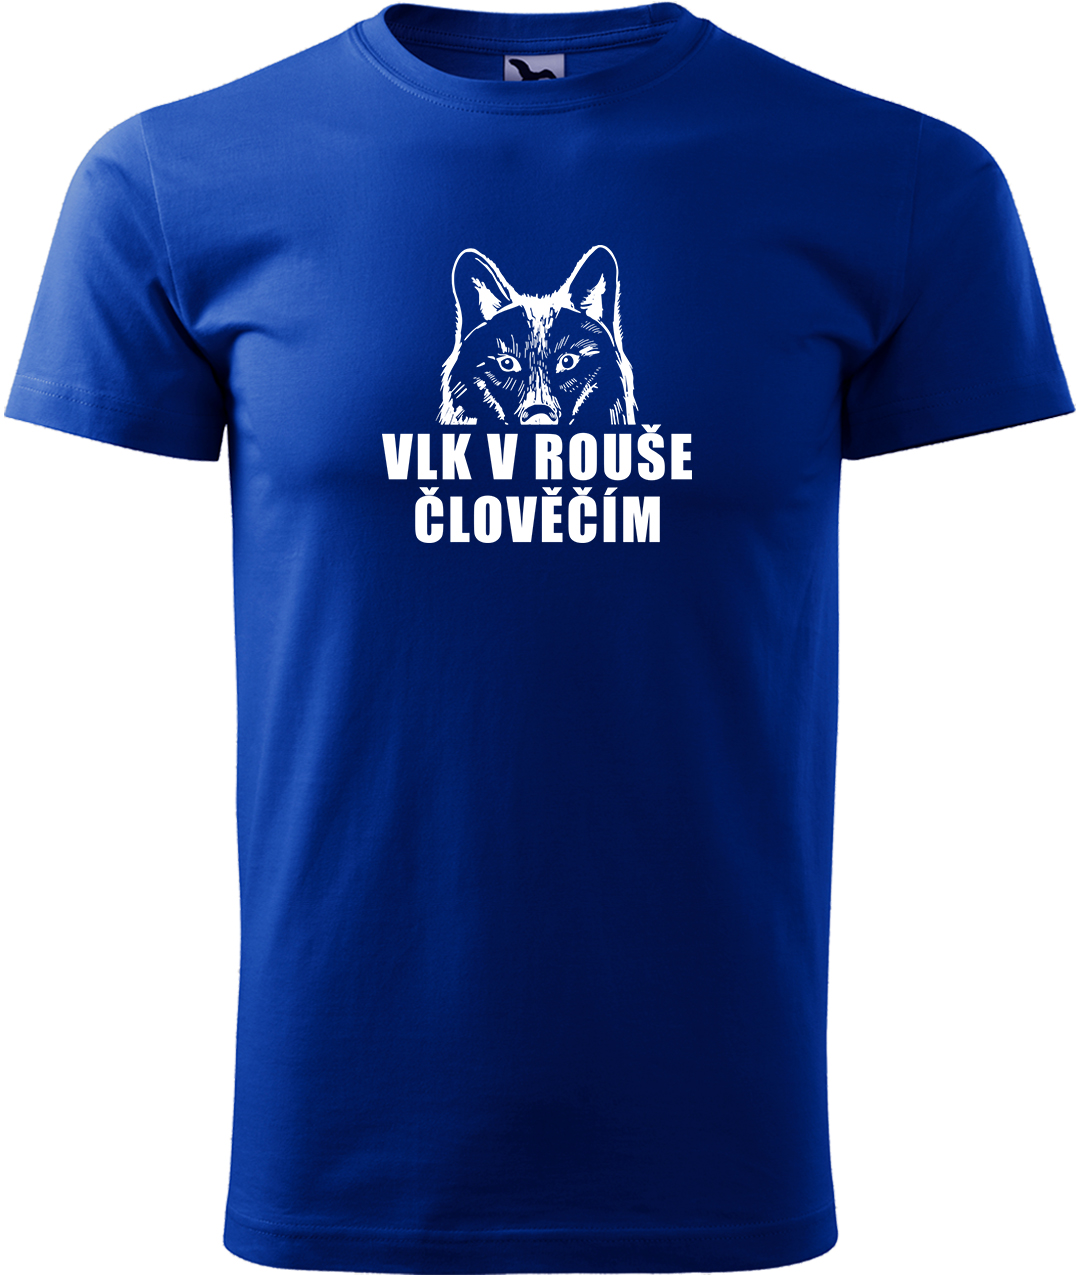 Pánské tričko s vlkem - Vlk v rouše člověčím Velikost: M, Barva: Královská modrá (05), Střih: pánský